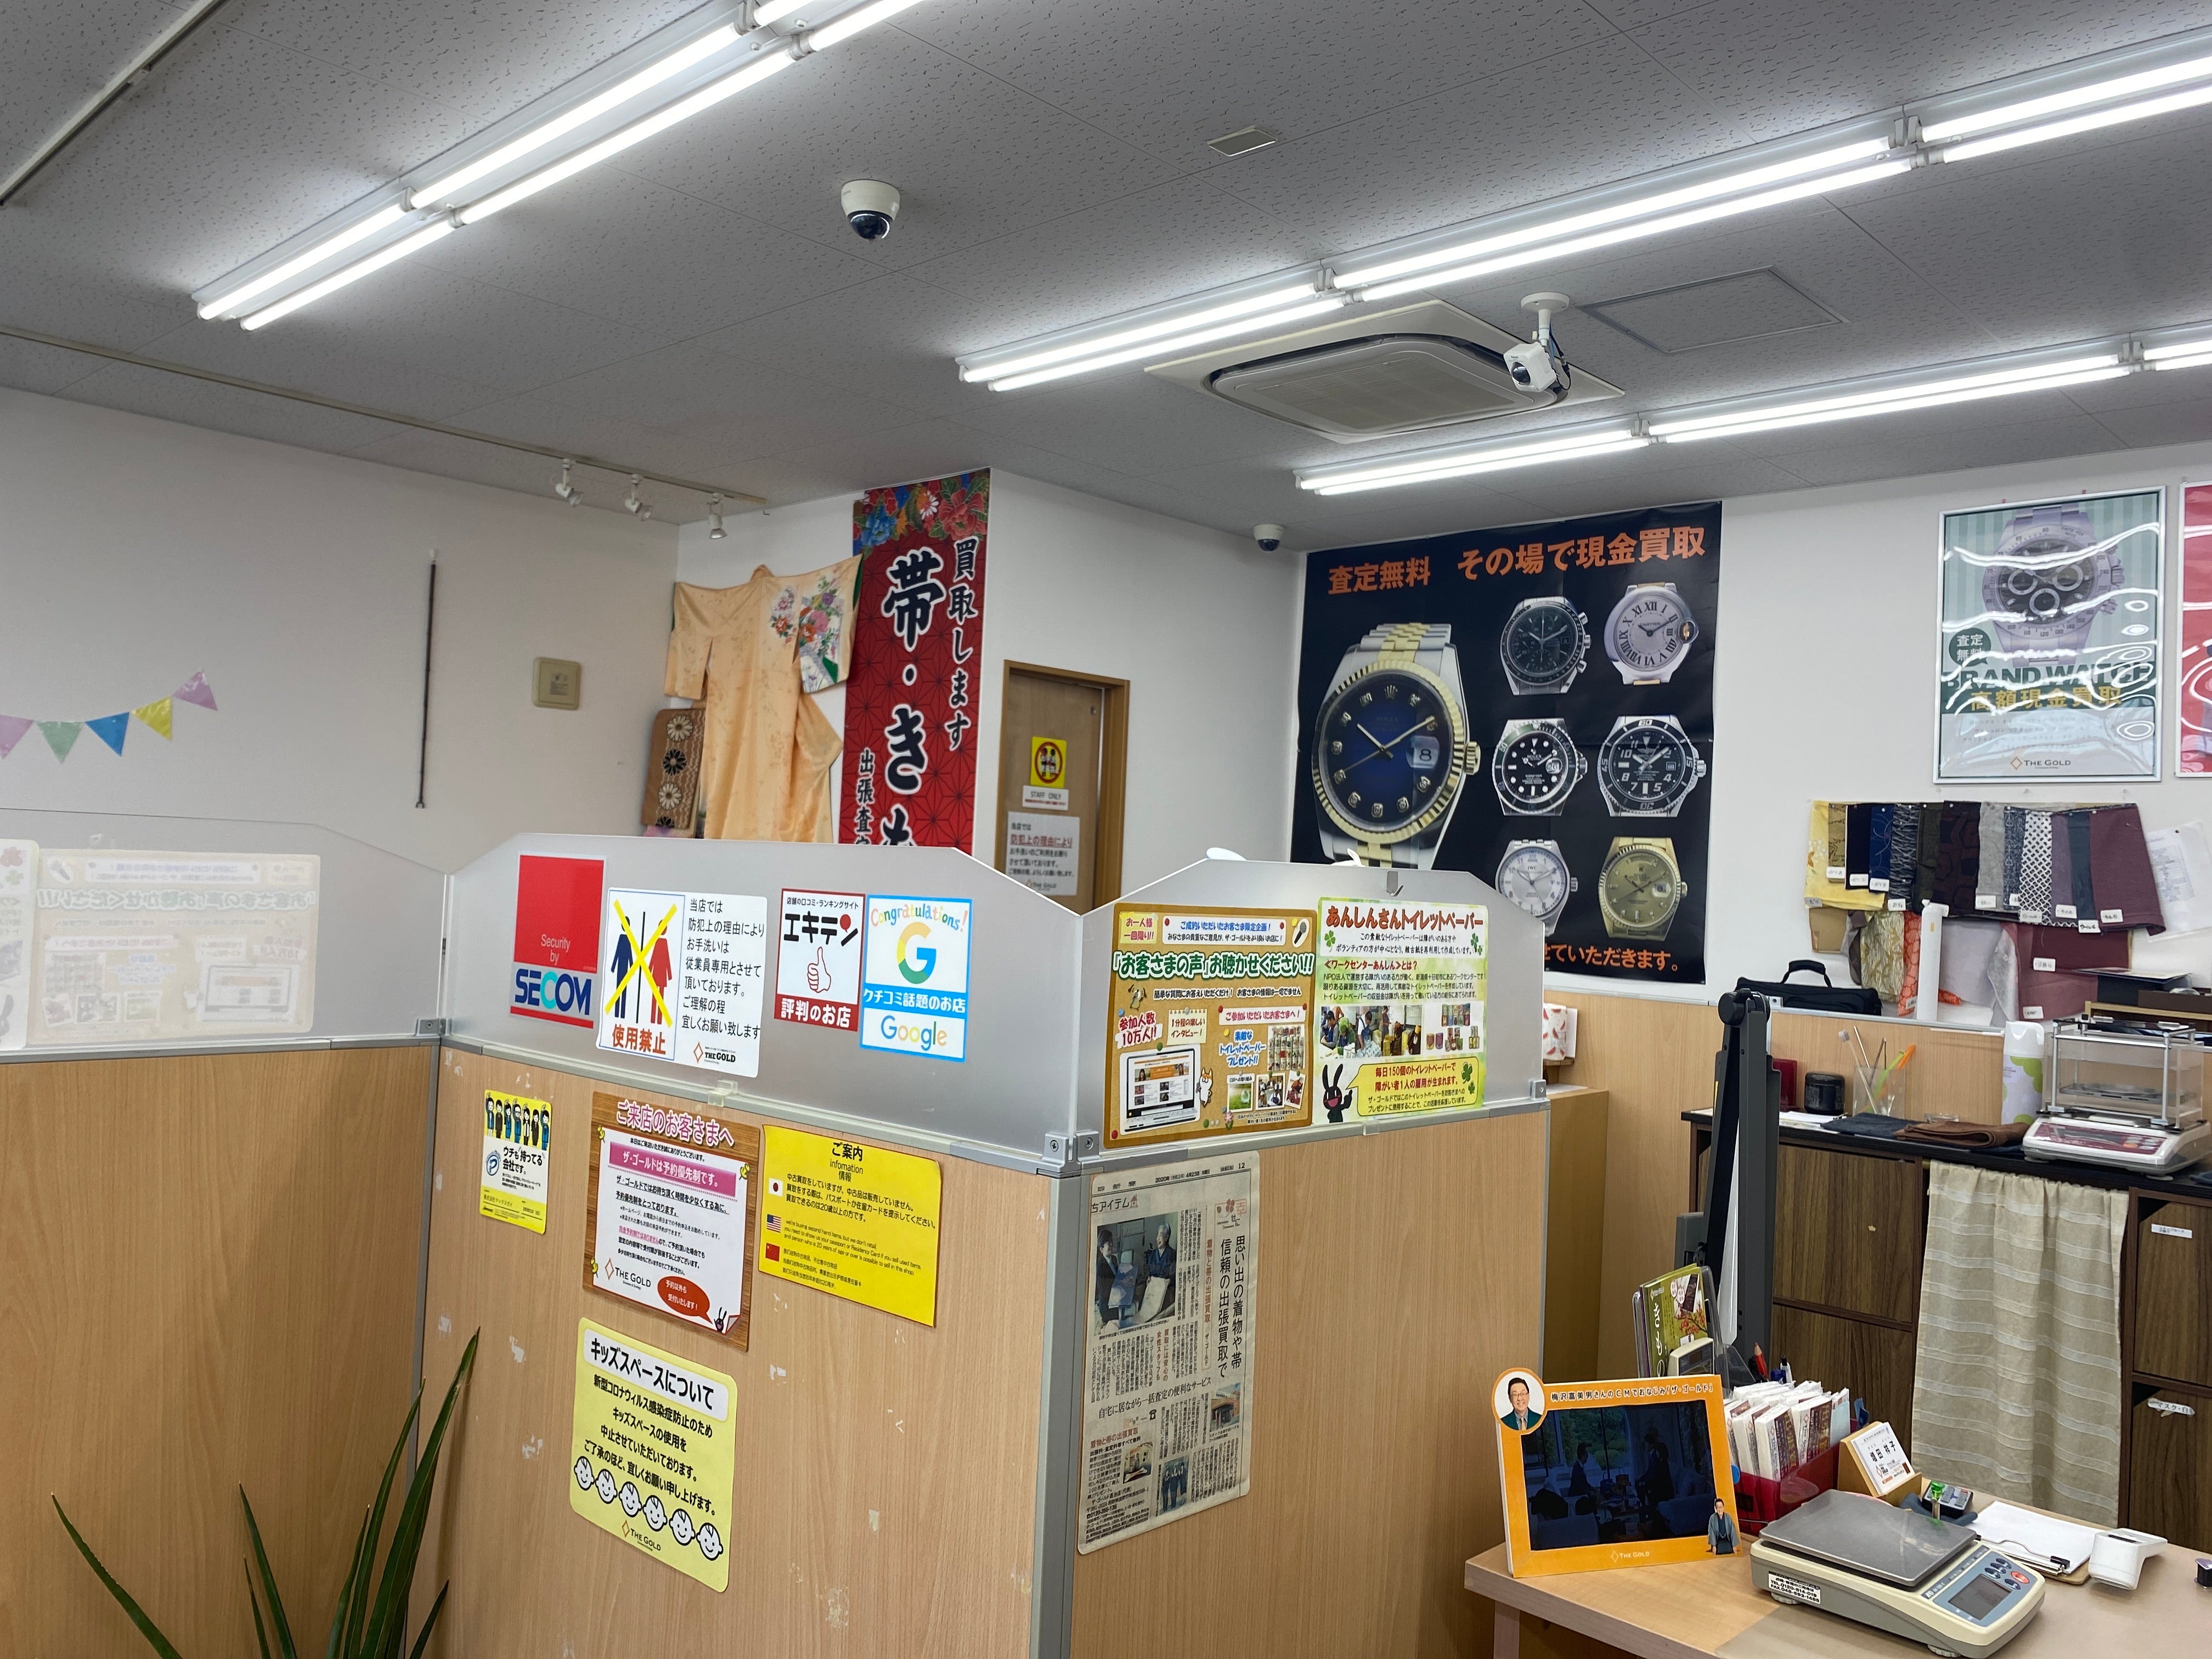 ザ・ゴールド 上田店の店内の様子の写真